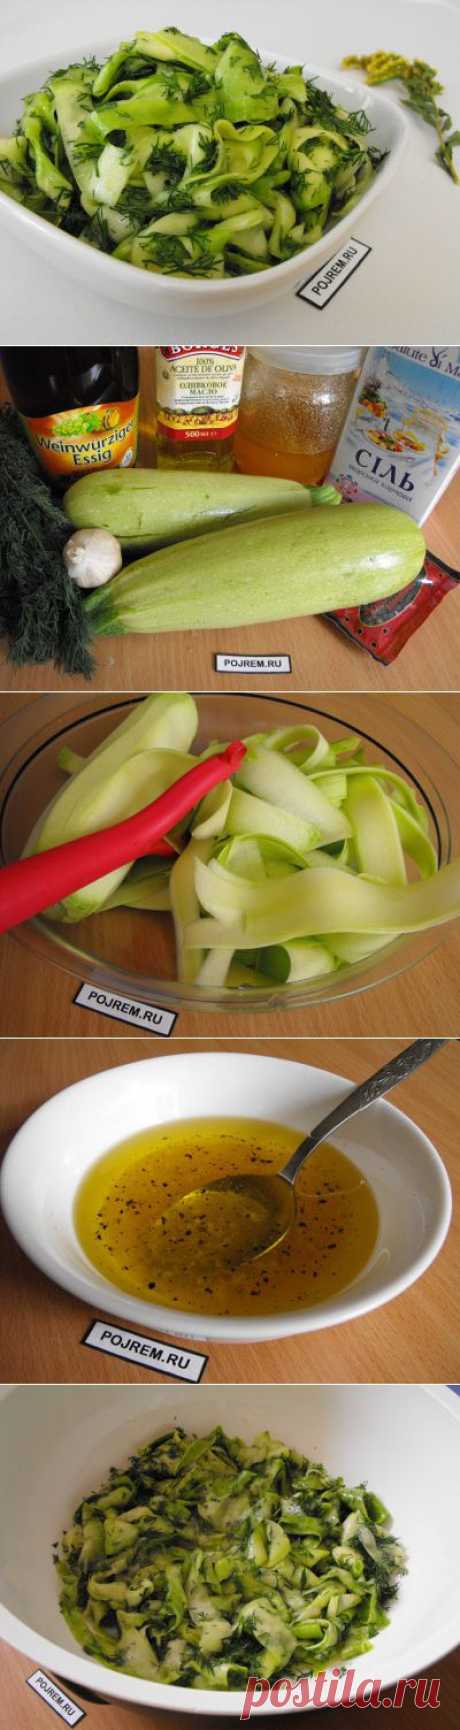 Маринованные кабачки быстрого приготовления - рецепт с фото